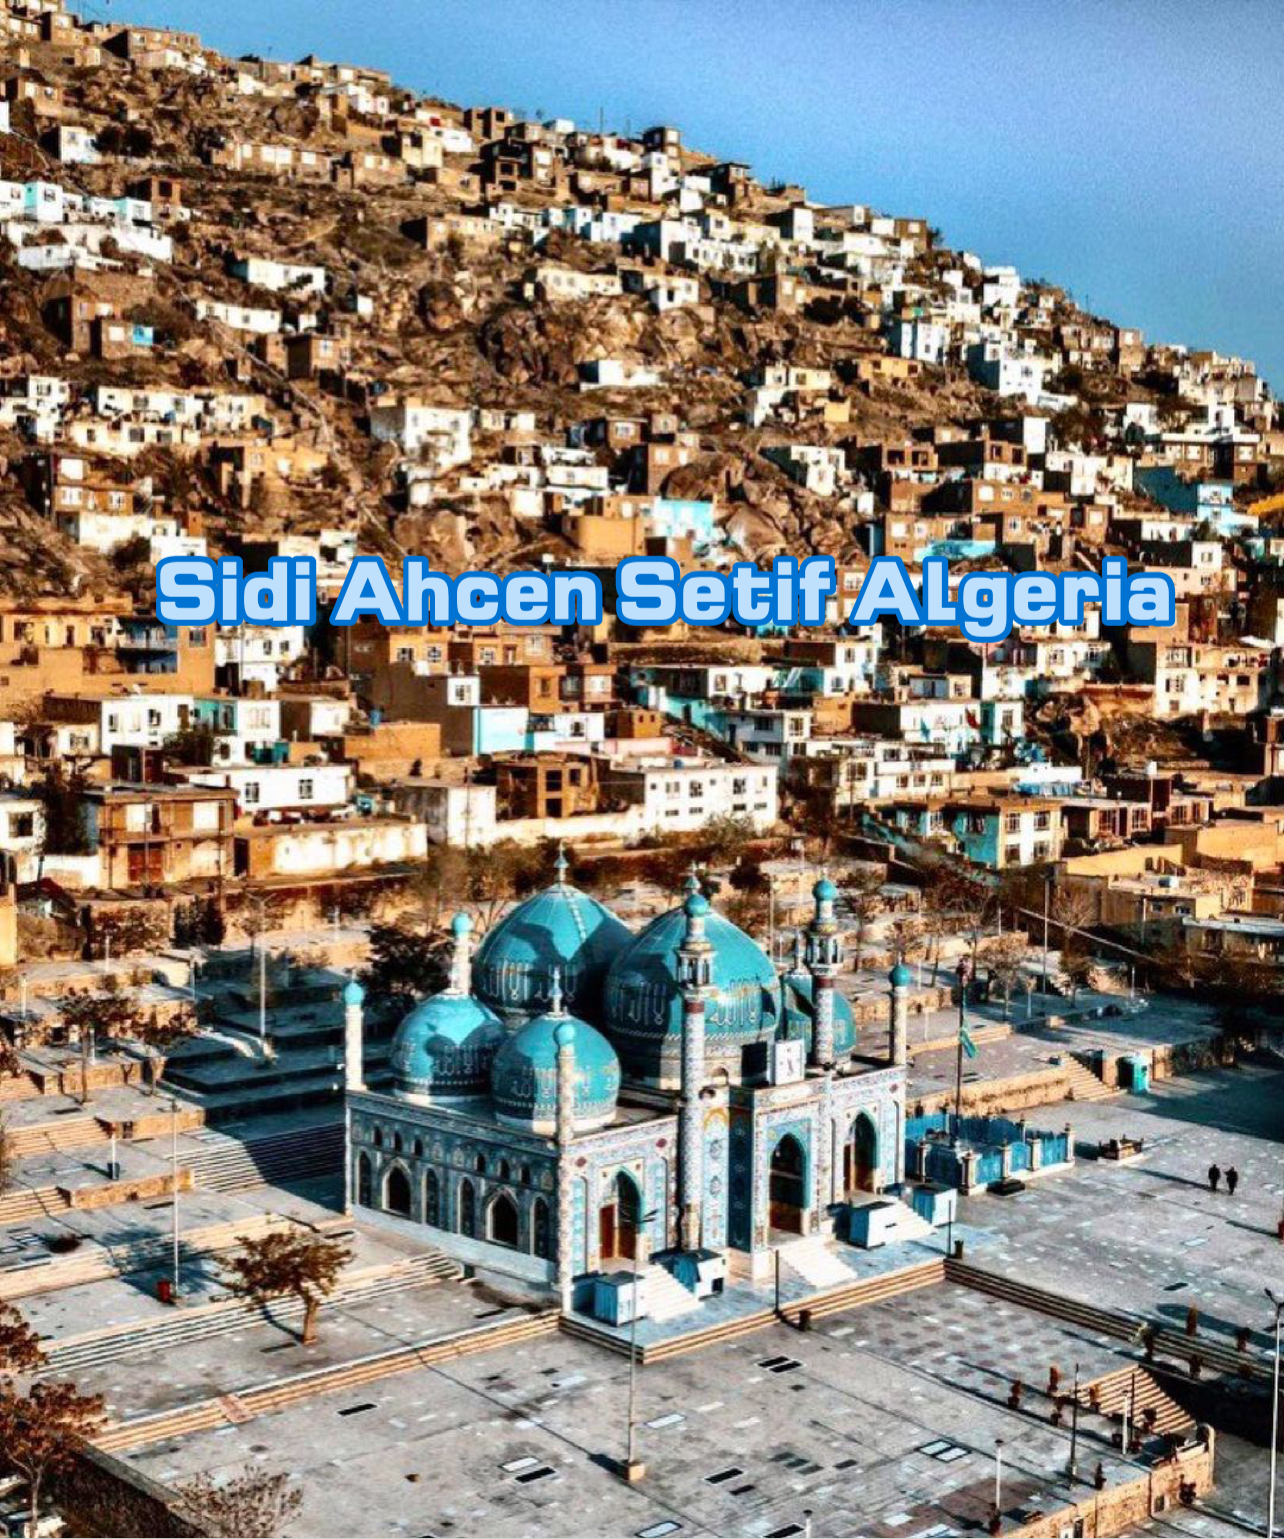 Sidi Ahcen Setif Algeria